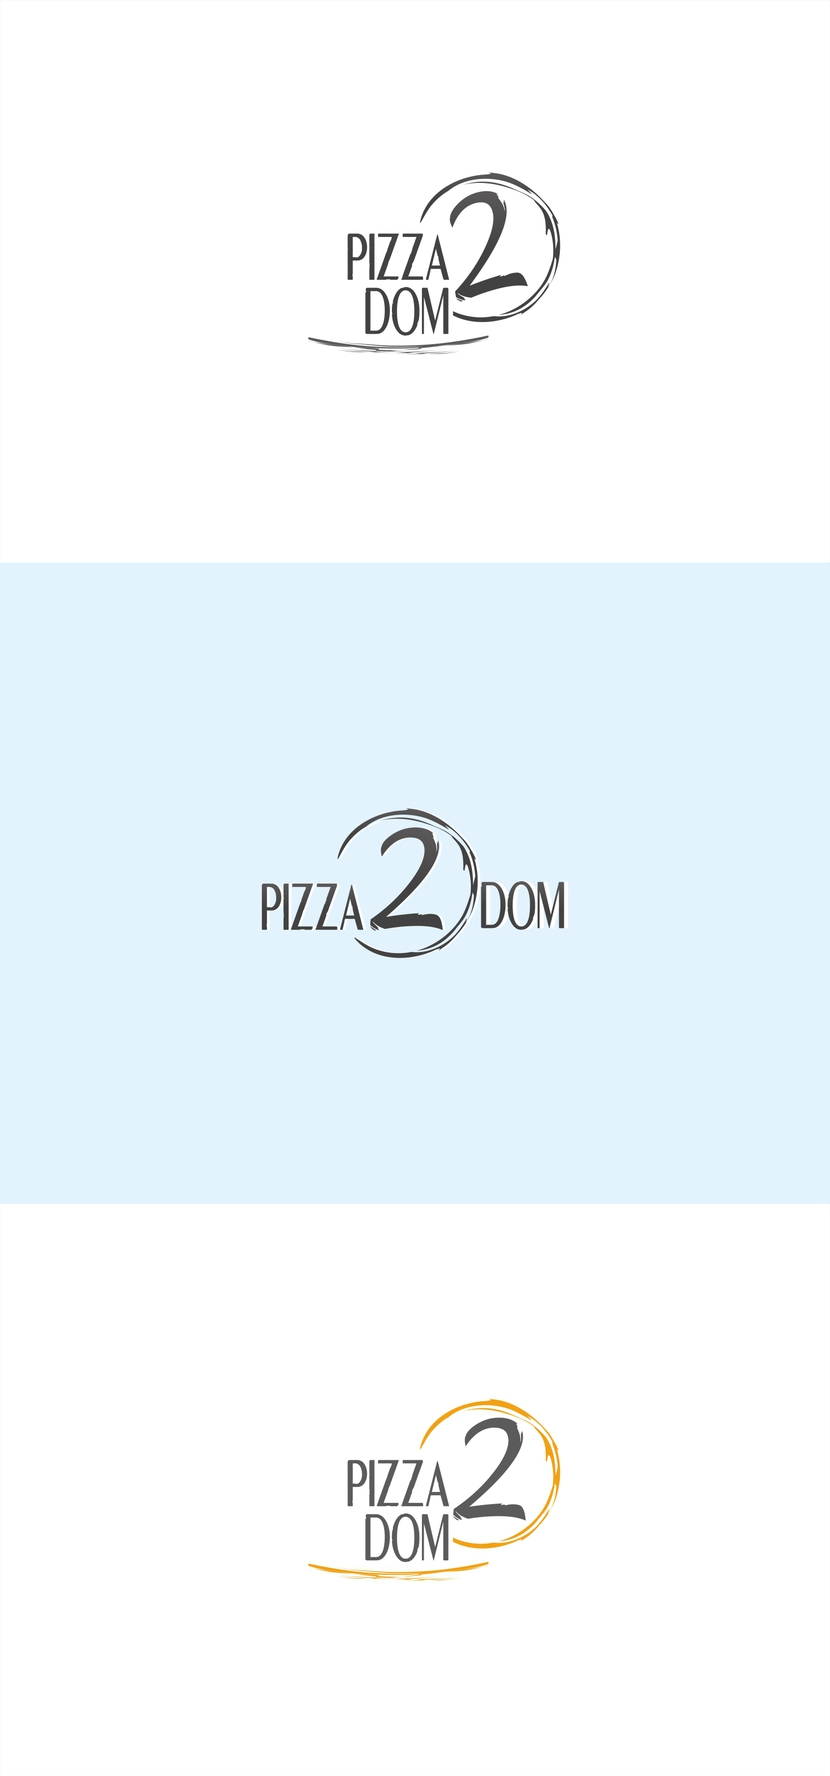 +++ - Создание логотипа для кафе-доставки пиццы